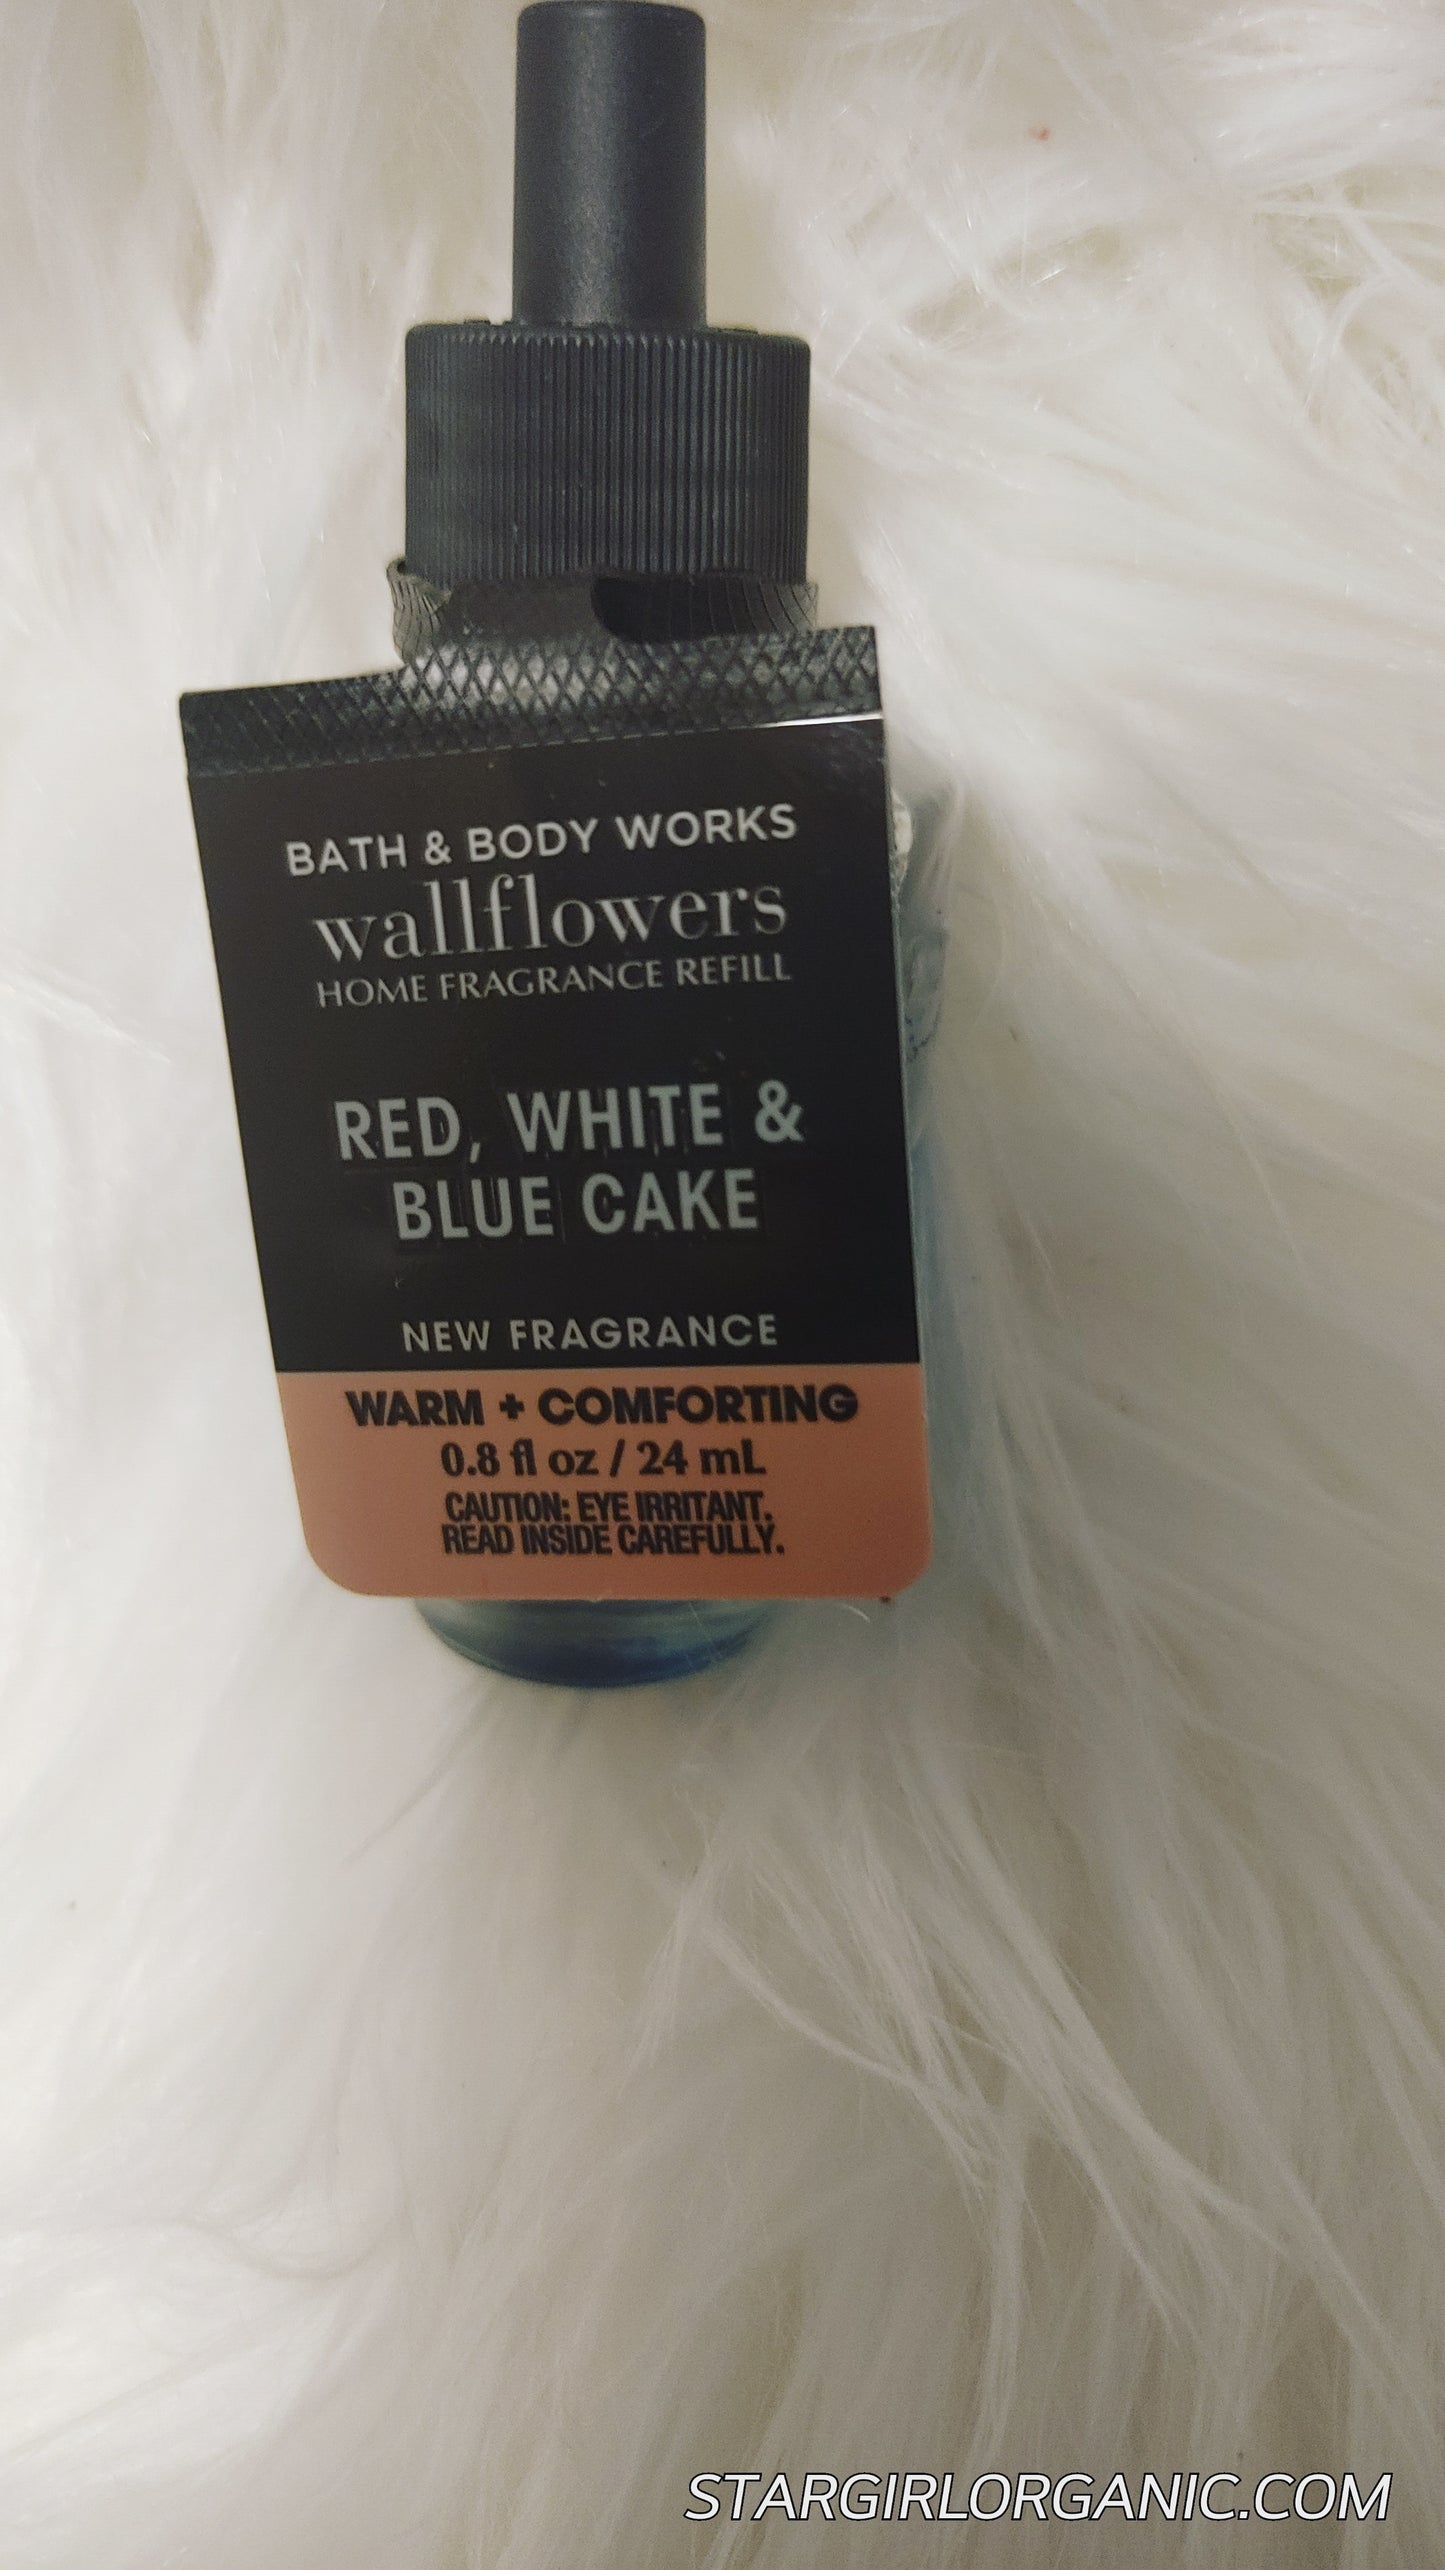 RED, WHITE & BLUE CAKE Wallflowers Fragrance Refill